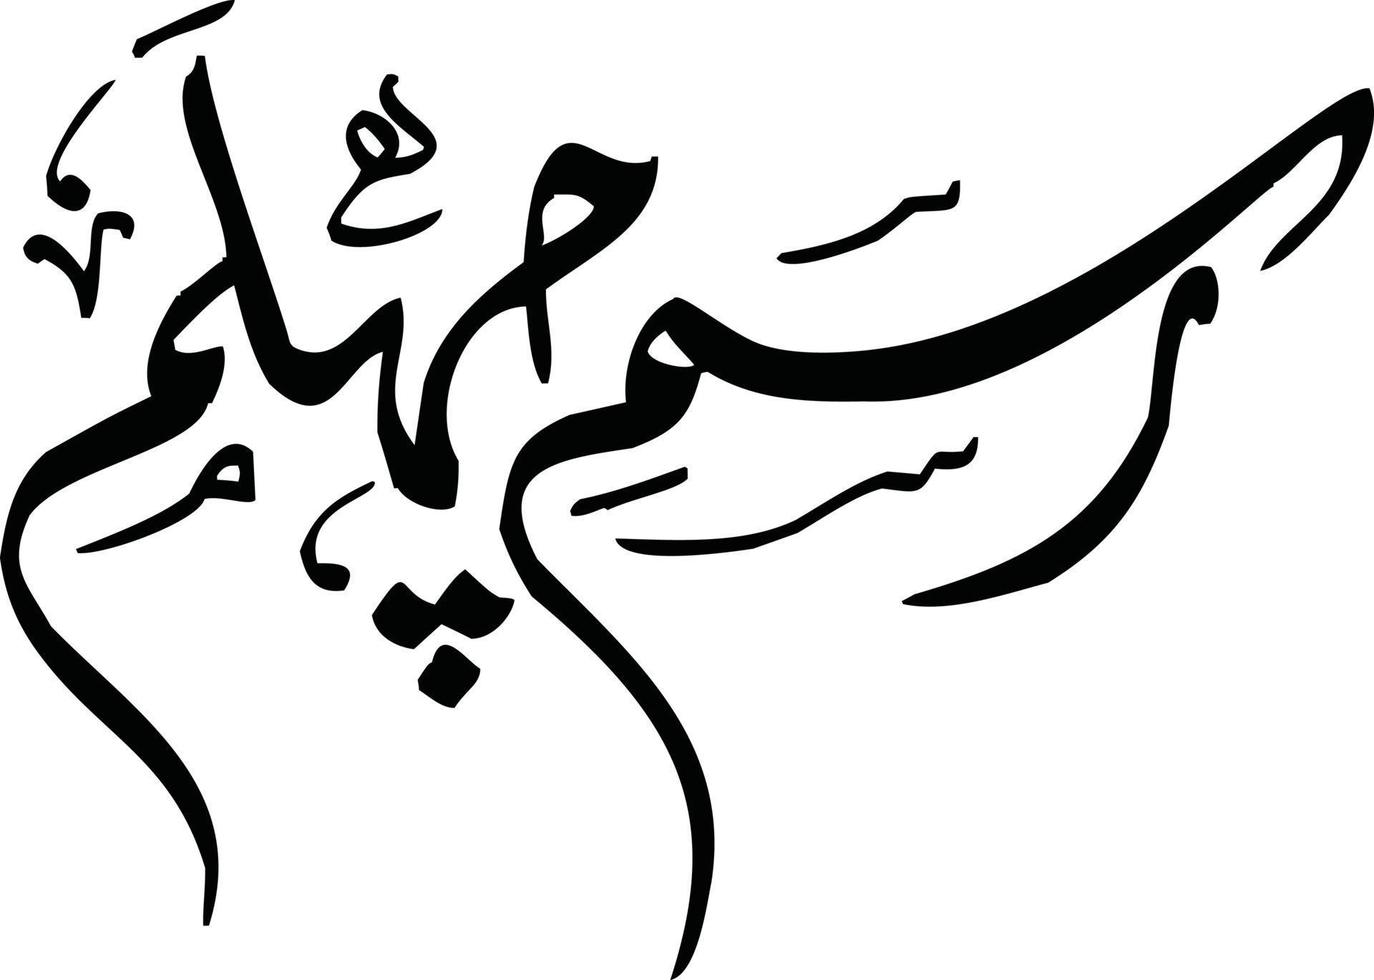 rasme chaelam caligrafía islámica vector libre